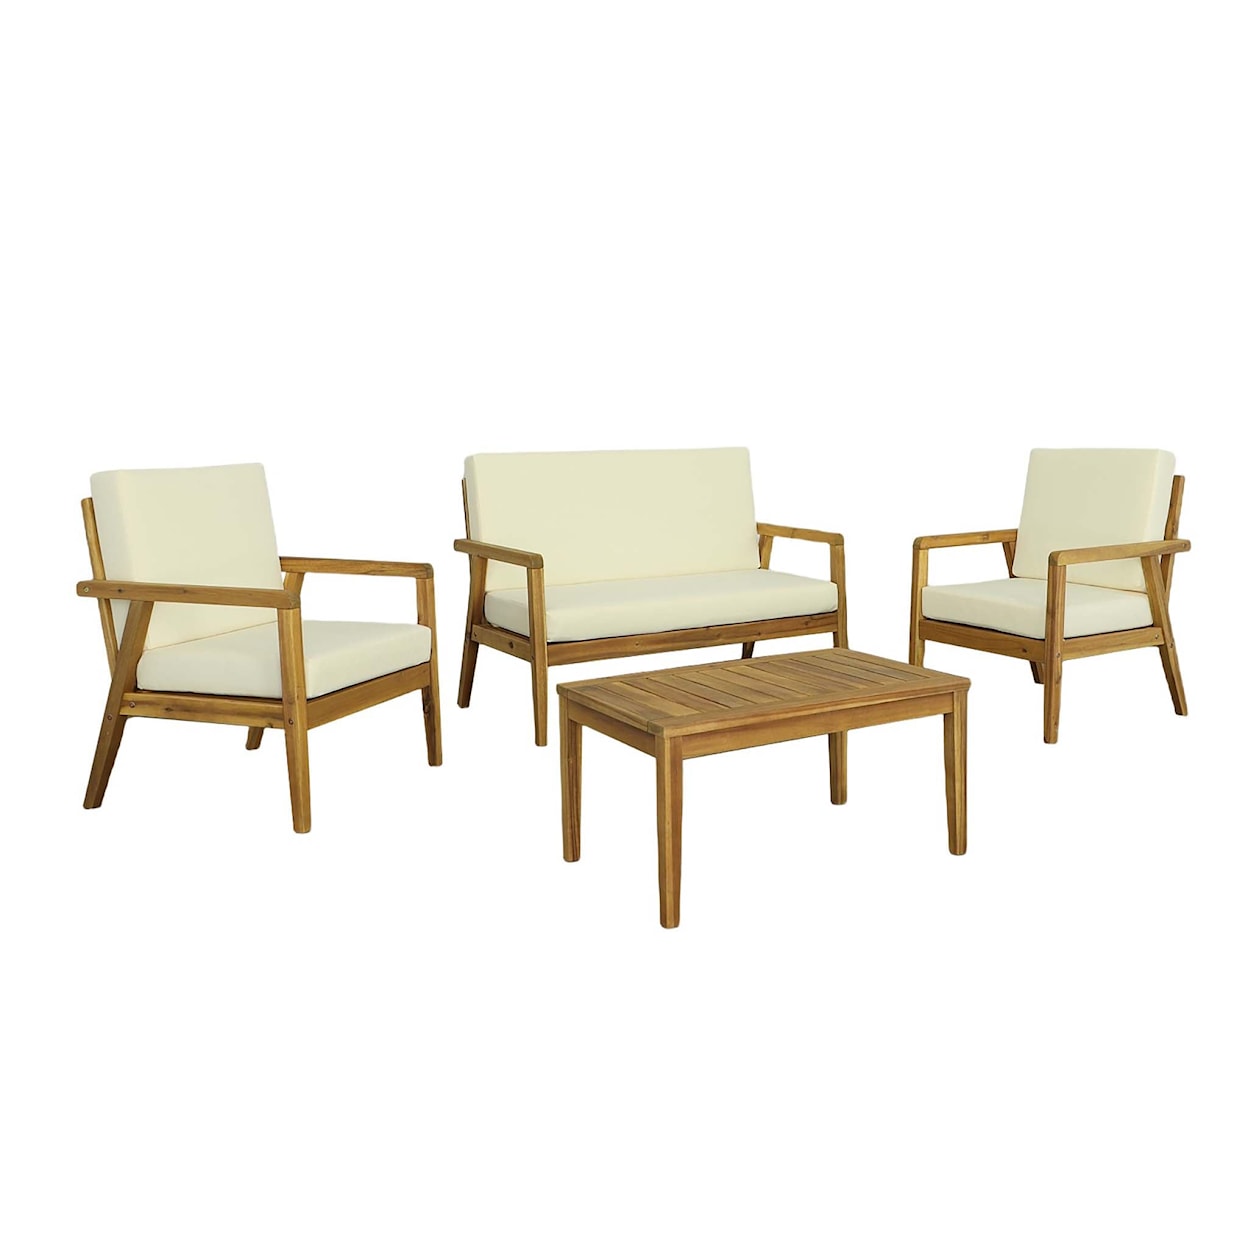 Progressive Furniture Cape Cod Outdoor Chair